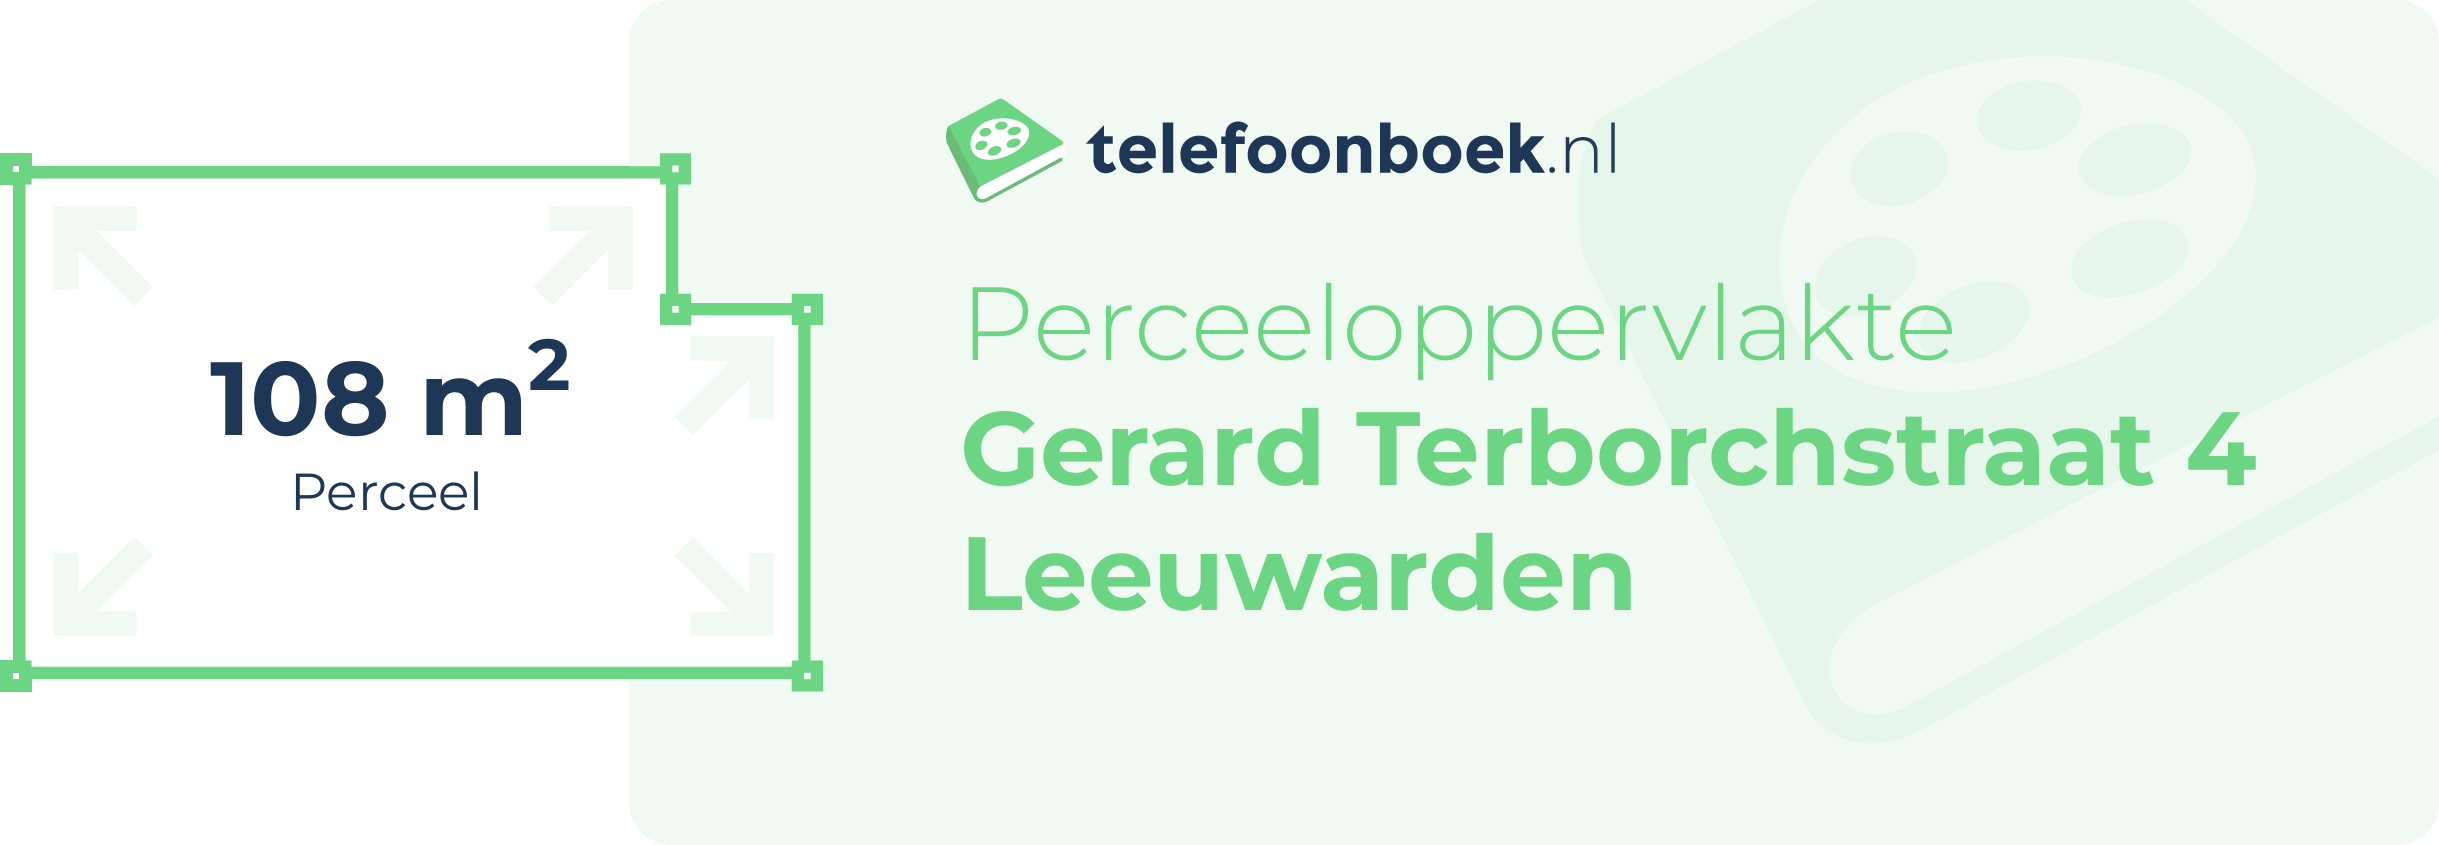 Perceeloppervlakte Gerard Terborchstraat 4 Leeuwarden